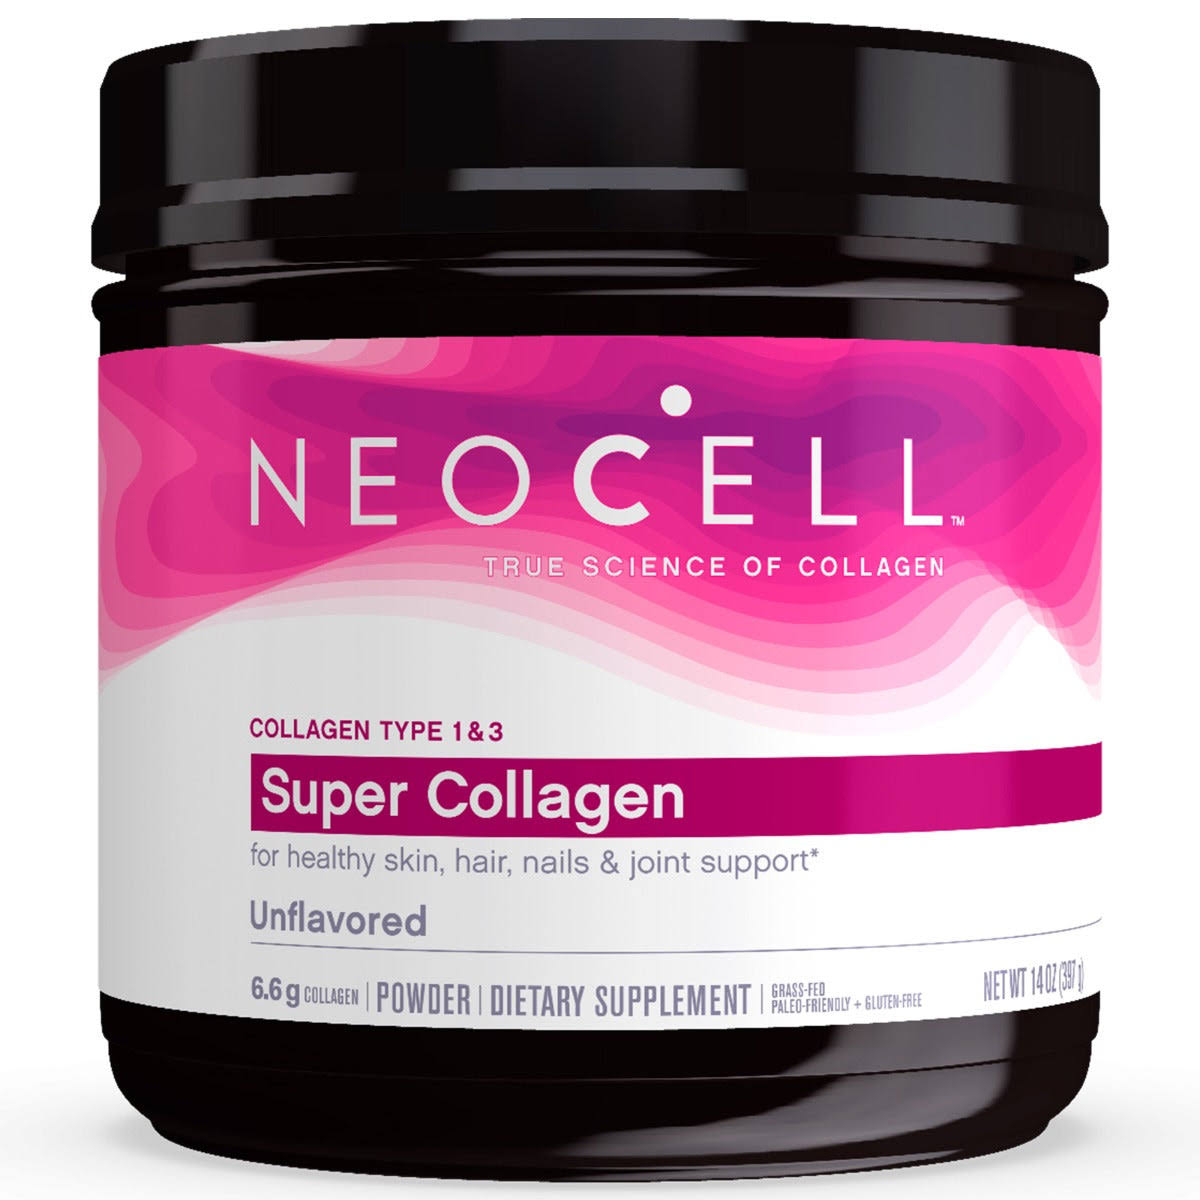 NeoCell Super Collagen Powder Dietary Supplement - 14oz